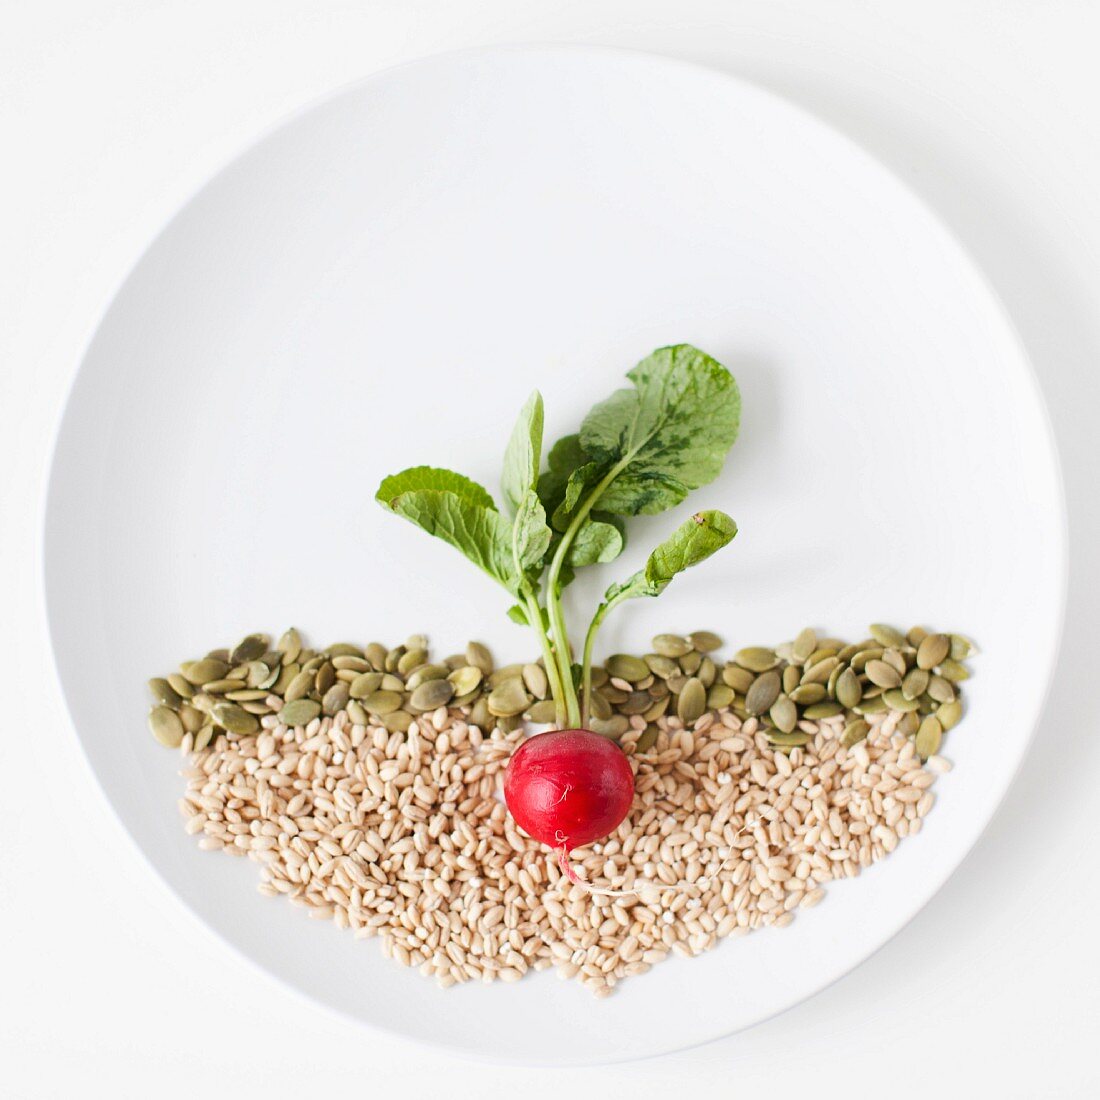 Foodbild mit Radieschen und Samen